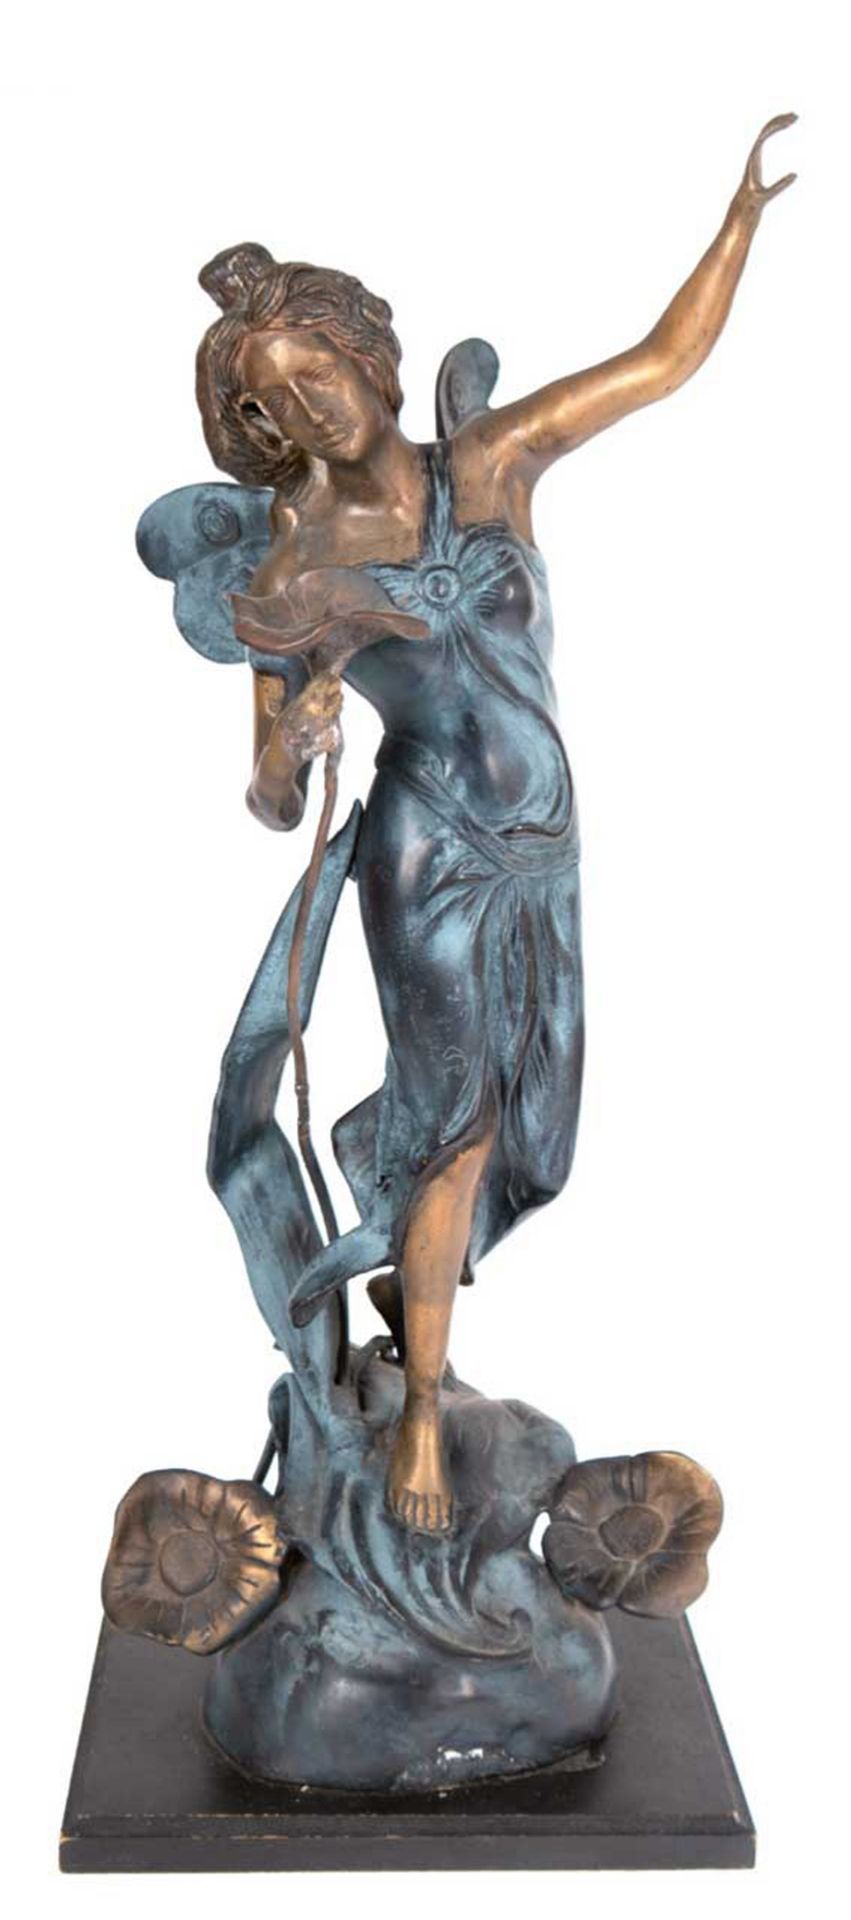 Jugendstil-Figur "Elfe mit Blüten", Metallguß, z.T. bronziert und gefaßt, auf Holzplinthe, H. 62 cm